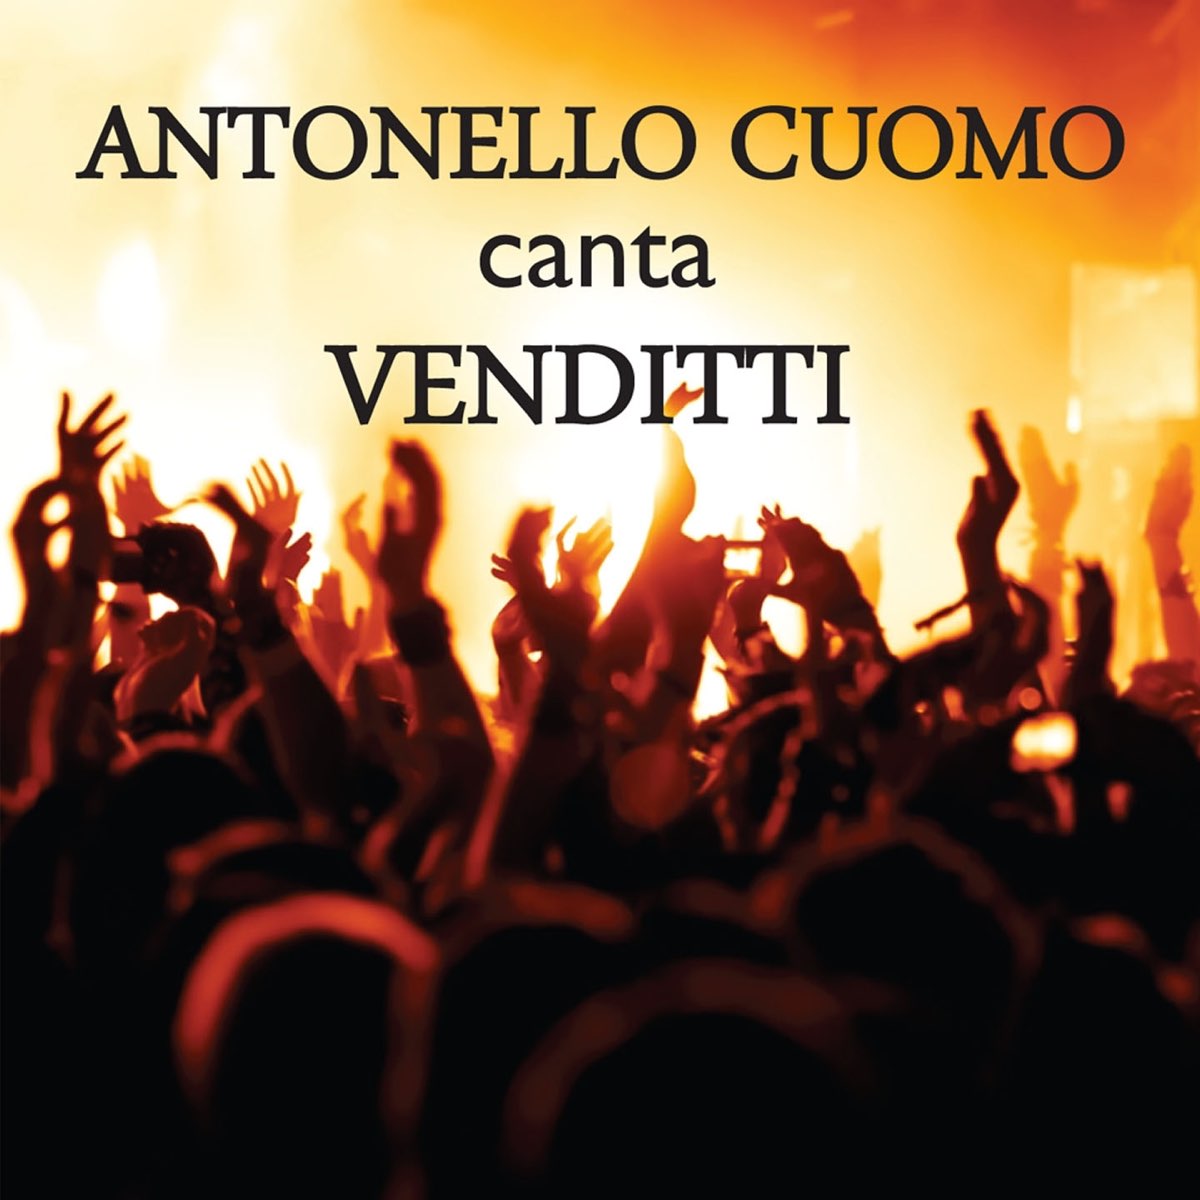 Antonello Cuomo canta Venditti by Antonello cuomo on Apple Music